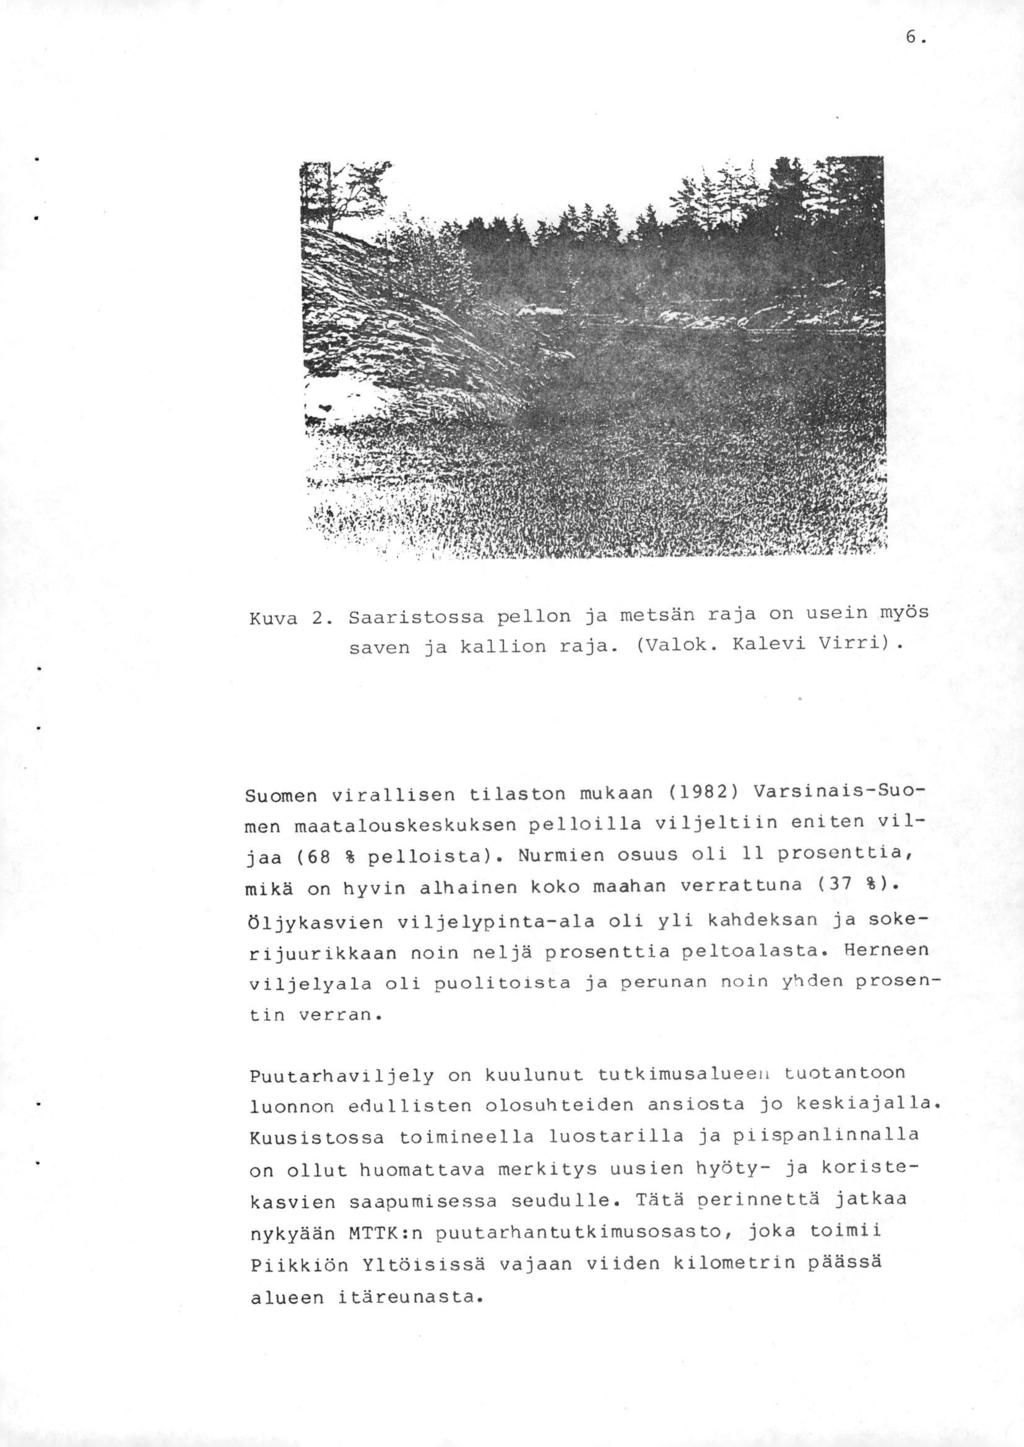 6. Kuva 2. Saaristossa pellon ja metsän raja on usein myös sav ja kallion raja. (Valok. Kalevi Virri).